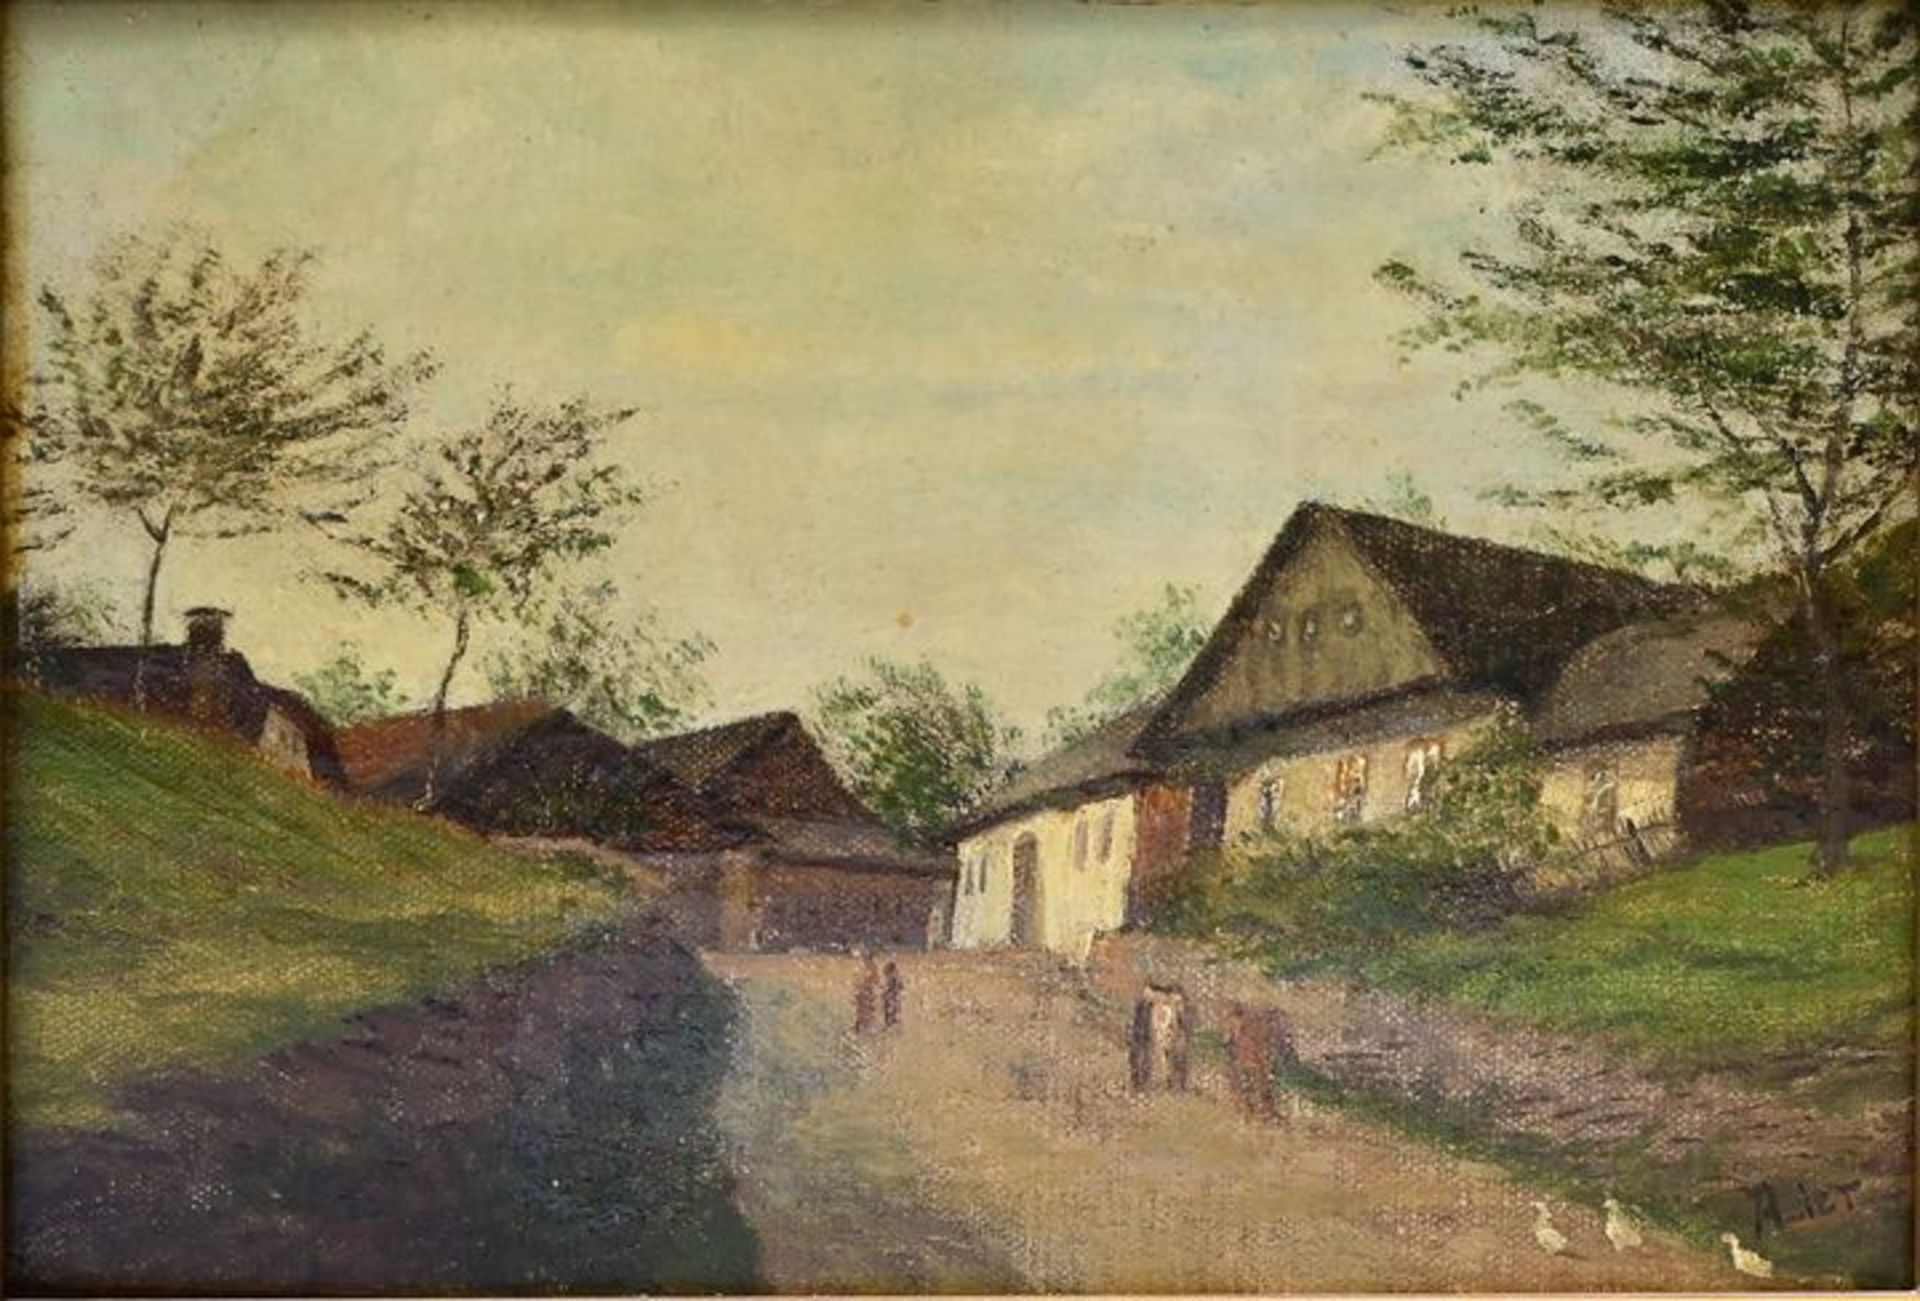 Lier, Adolf, Dorfleben / Life in the village